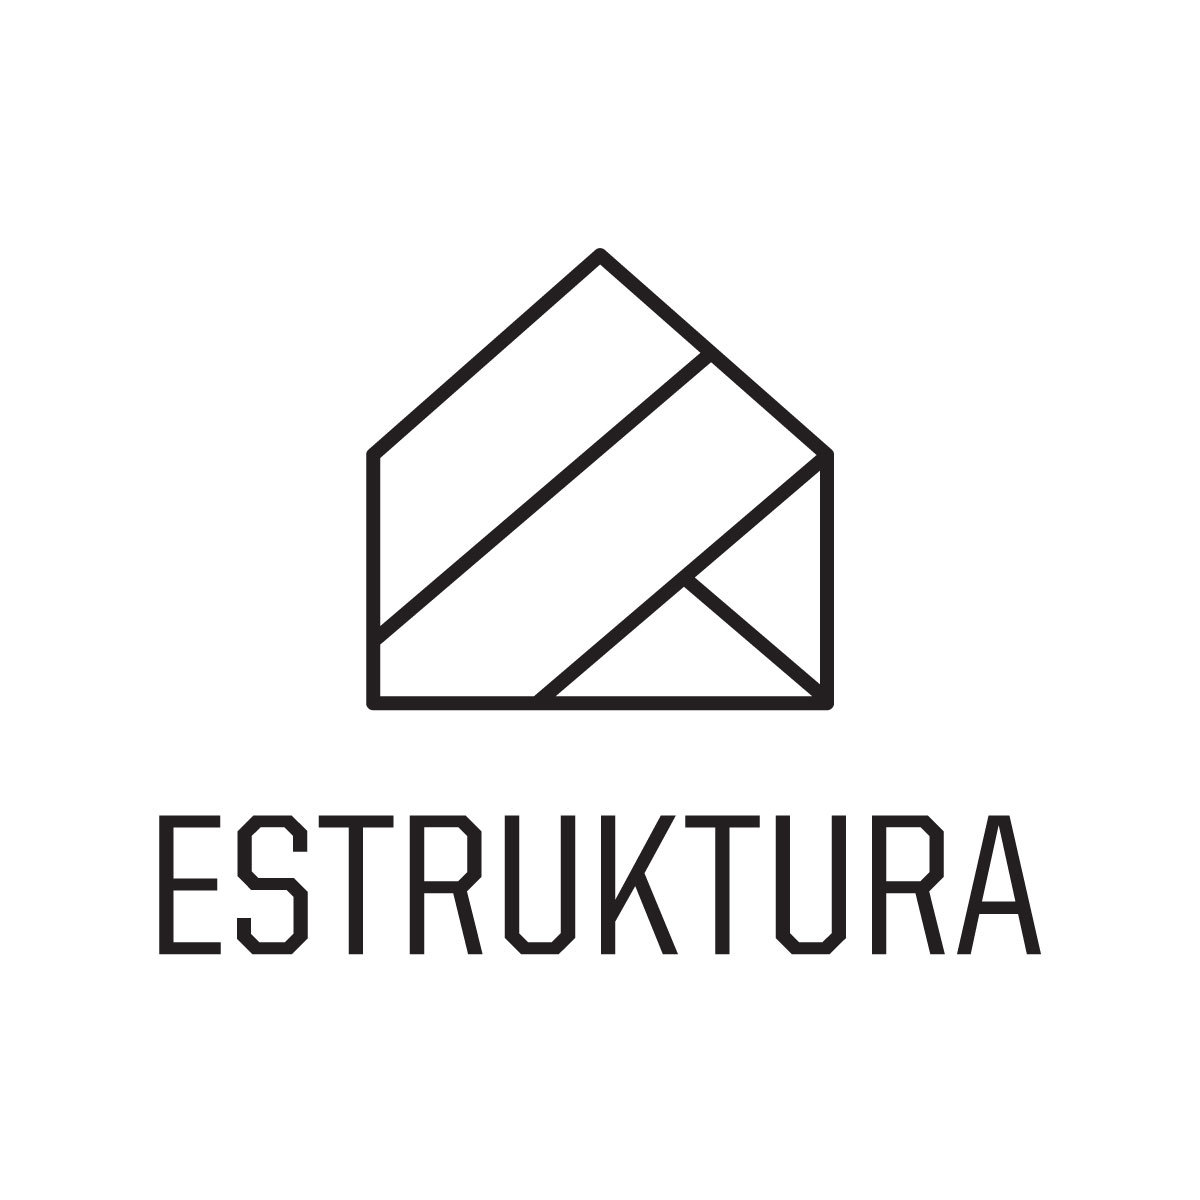 ESTRUKTURA's logo